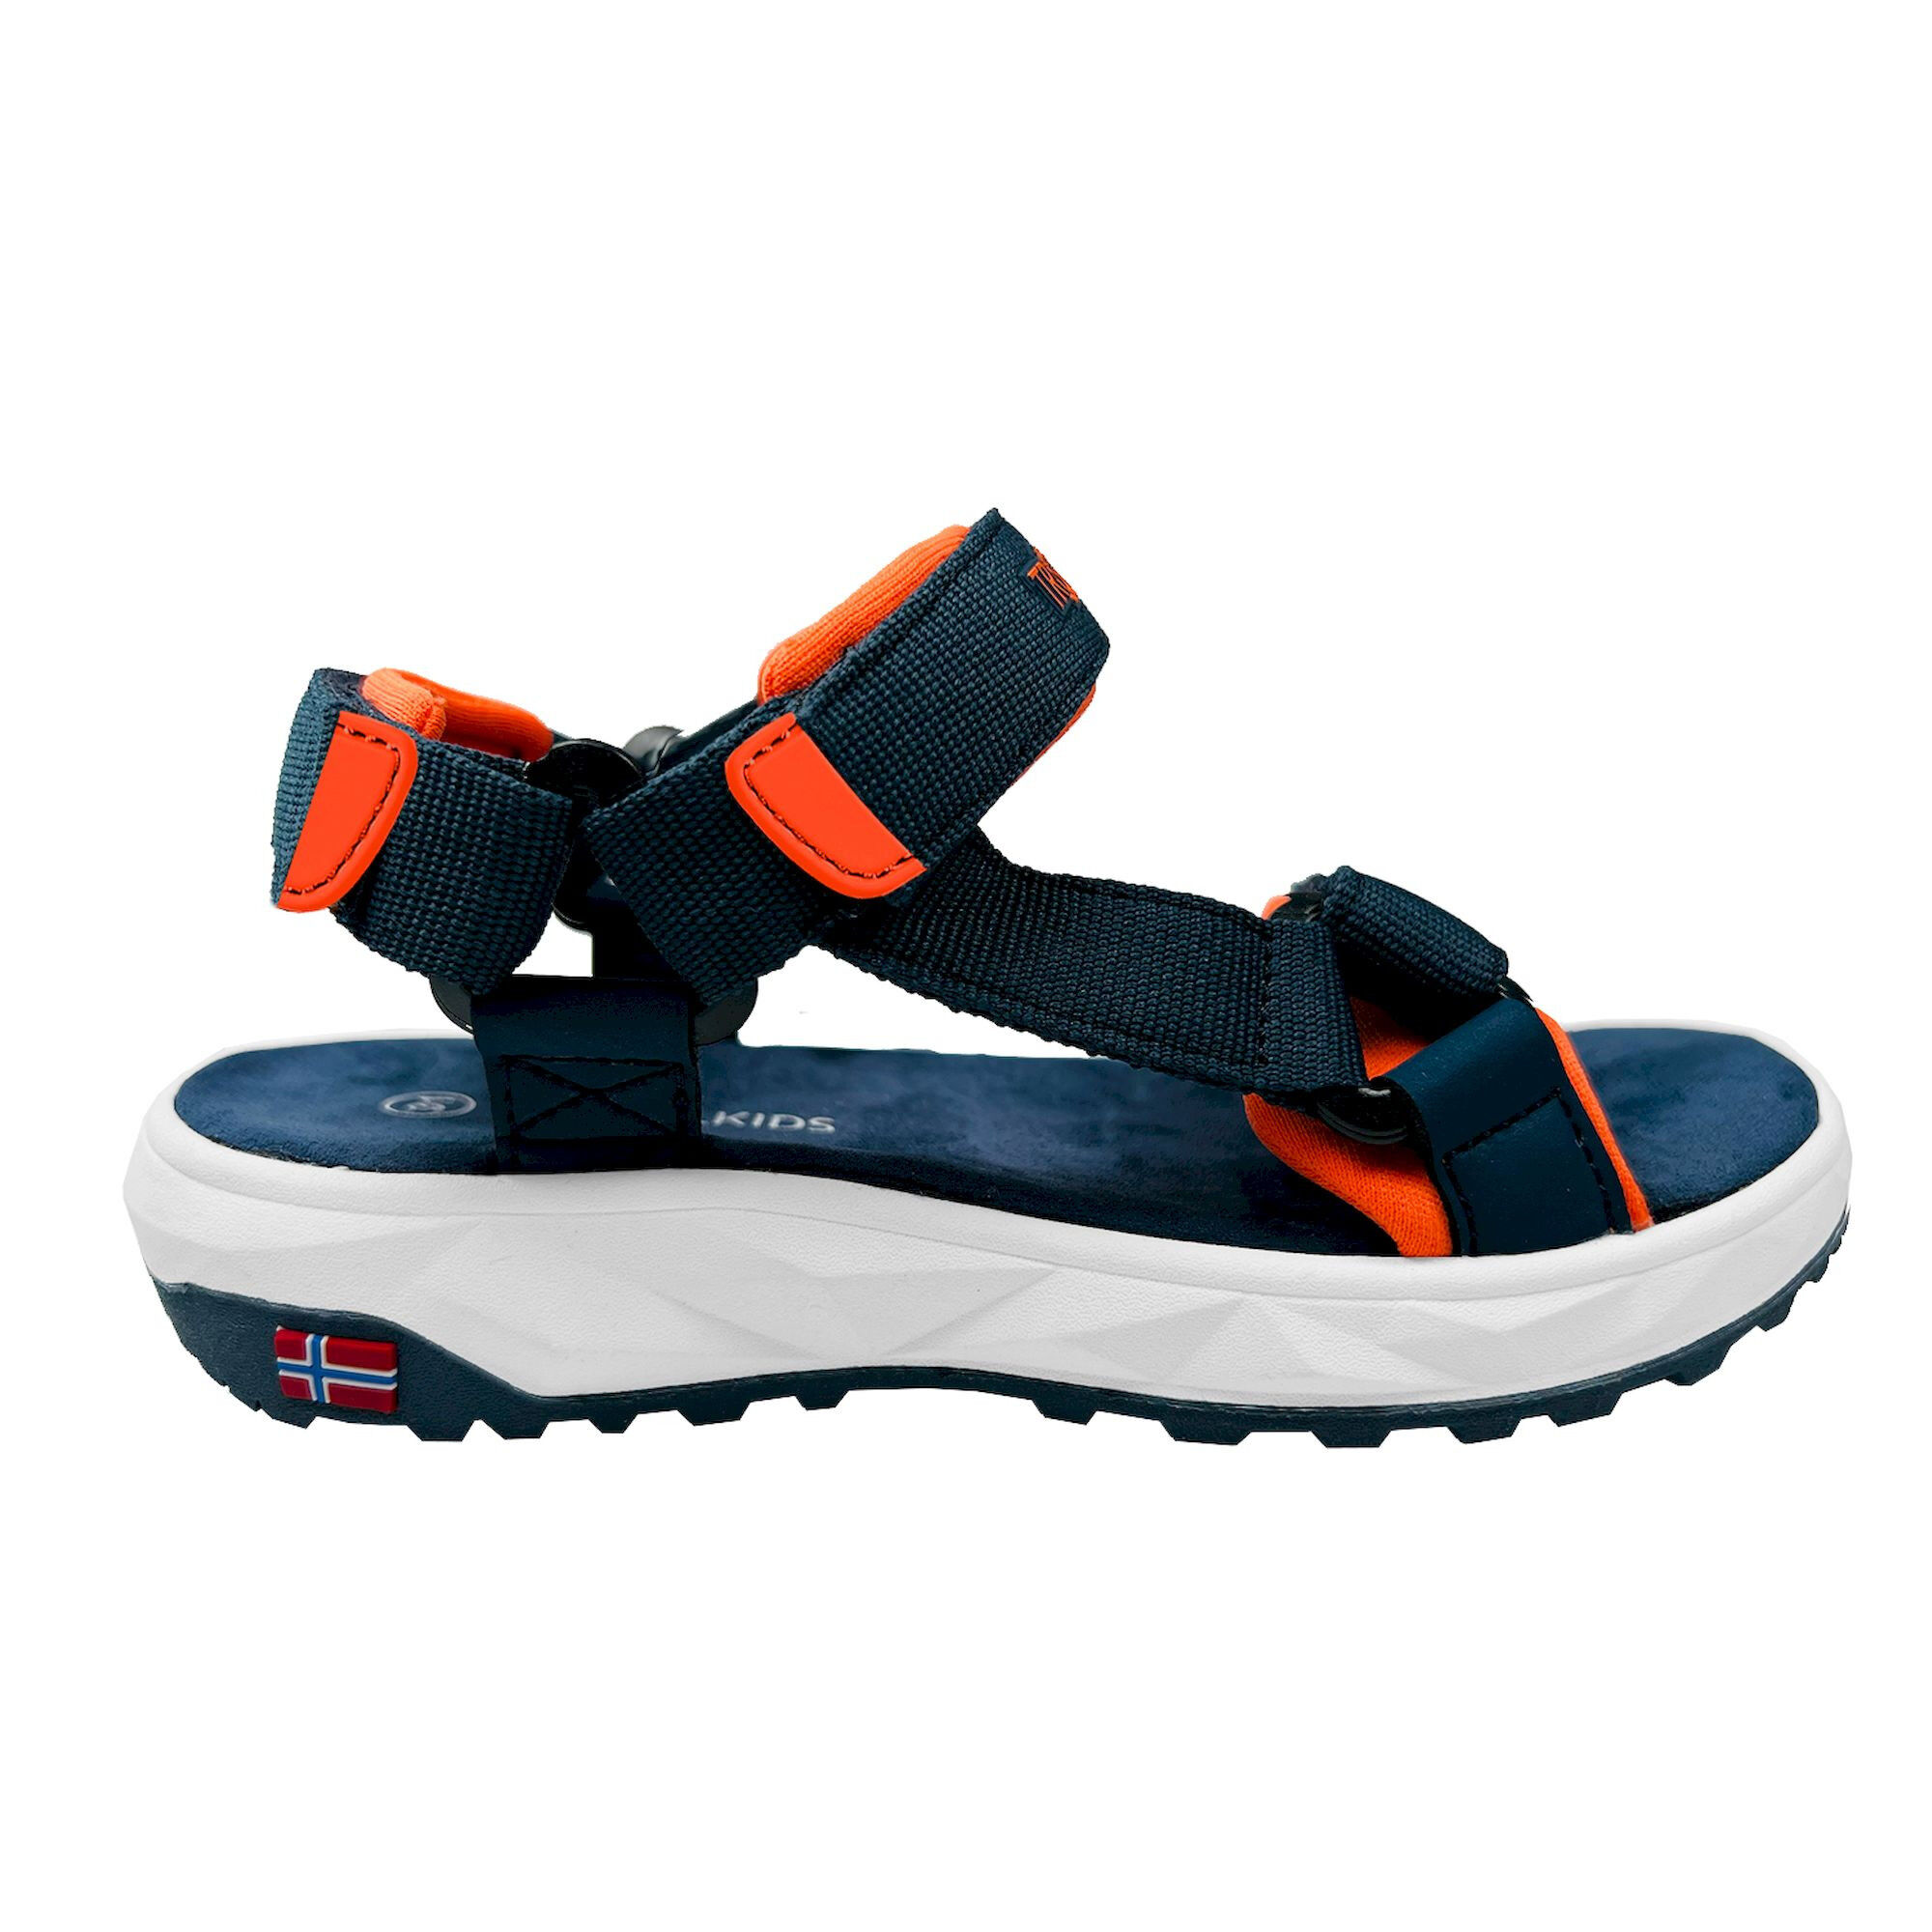 Trollkids Lysefjord Sandal - Walking sandals - Kid's | Hardloop